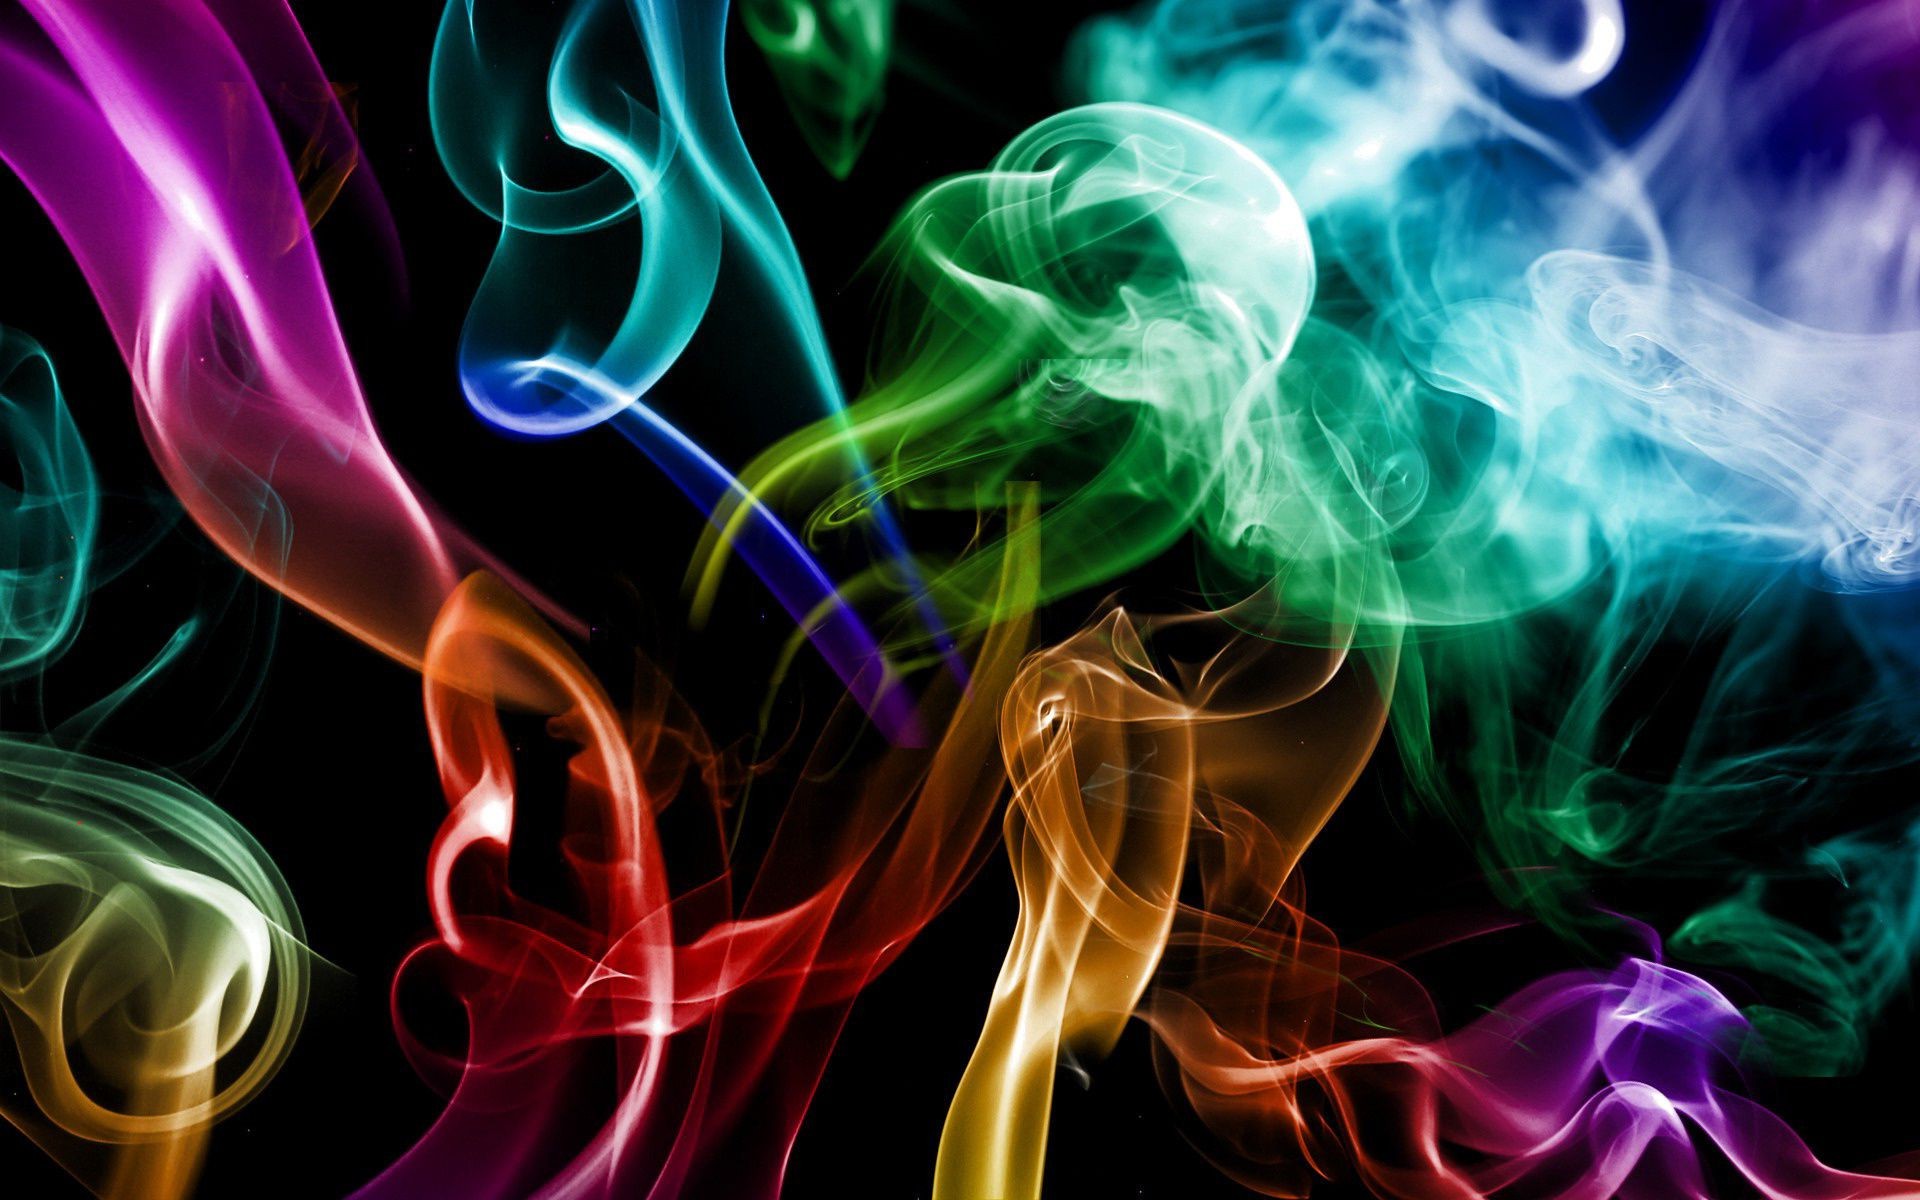 абстракция динамические волна пламя дым движения кривая дизайн фимиам энергии свет туман шаблон сожгли поток искусство эффект рабочего стола формы фон